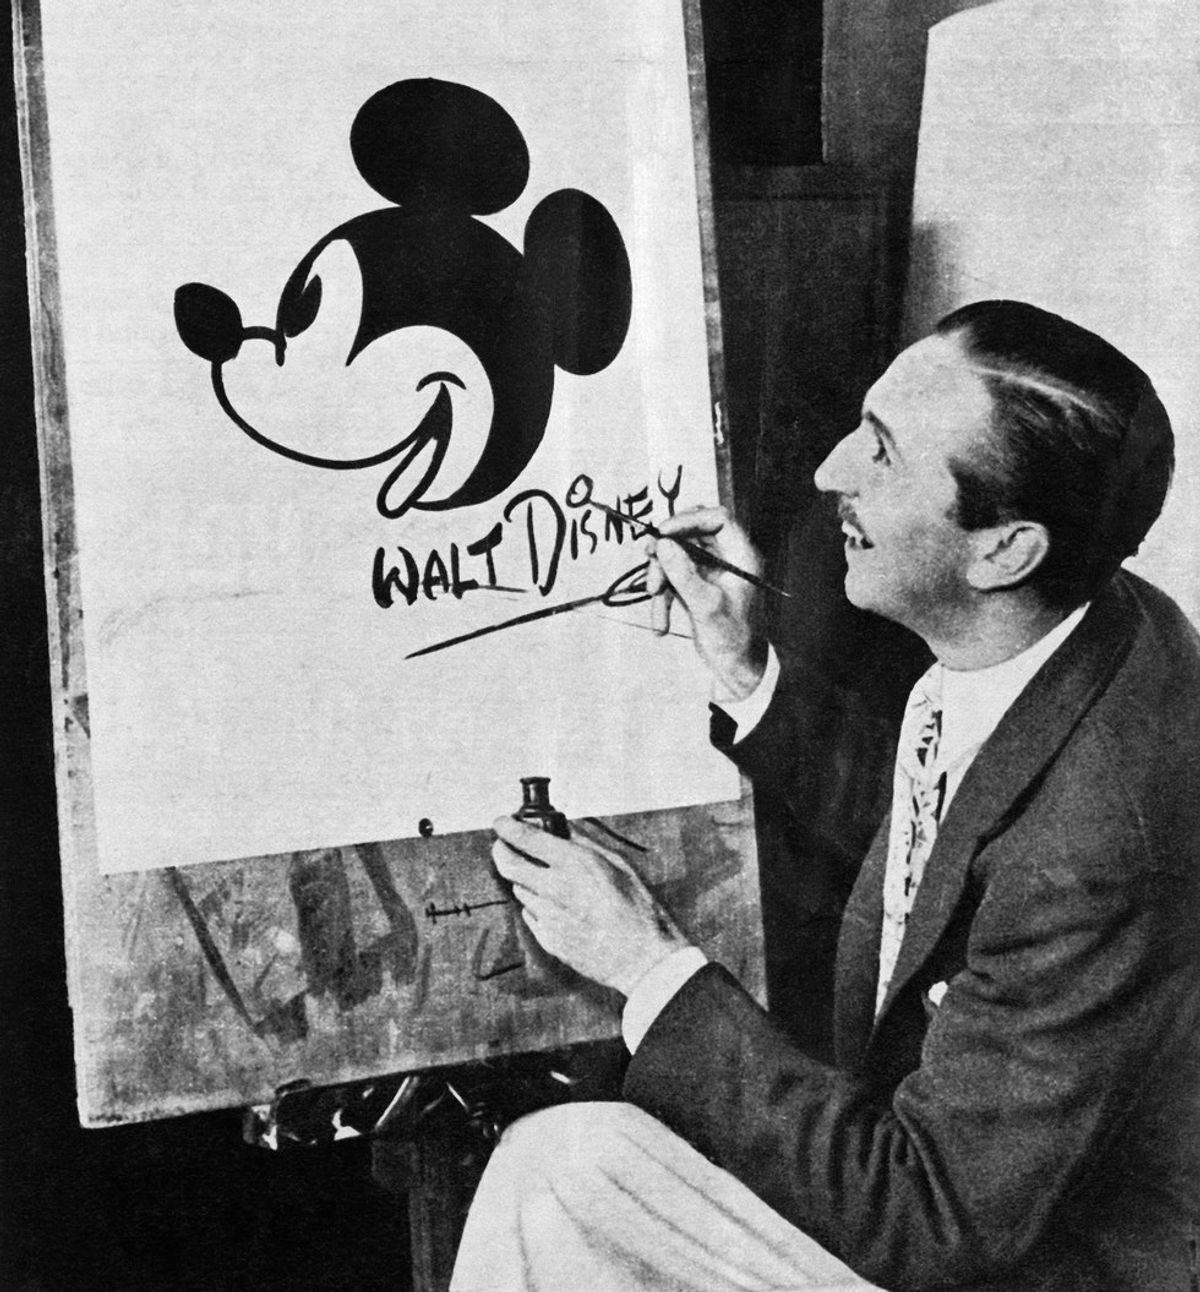 Thank You, Walter Elias Disney